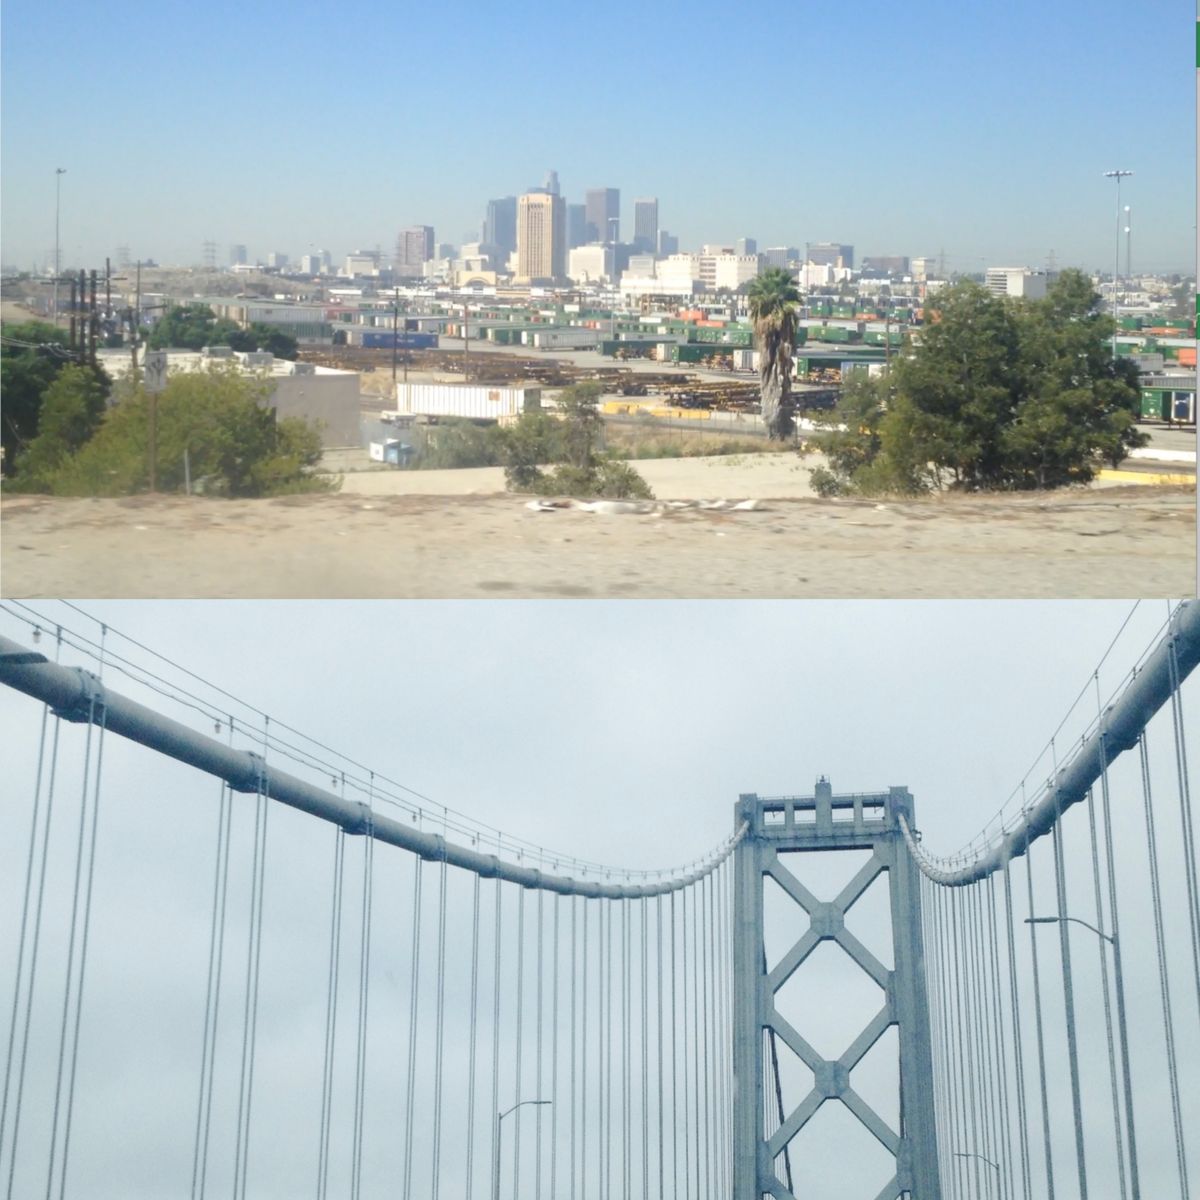 Los Angeles vs San Francisco